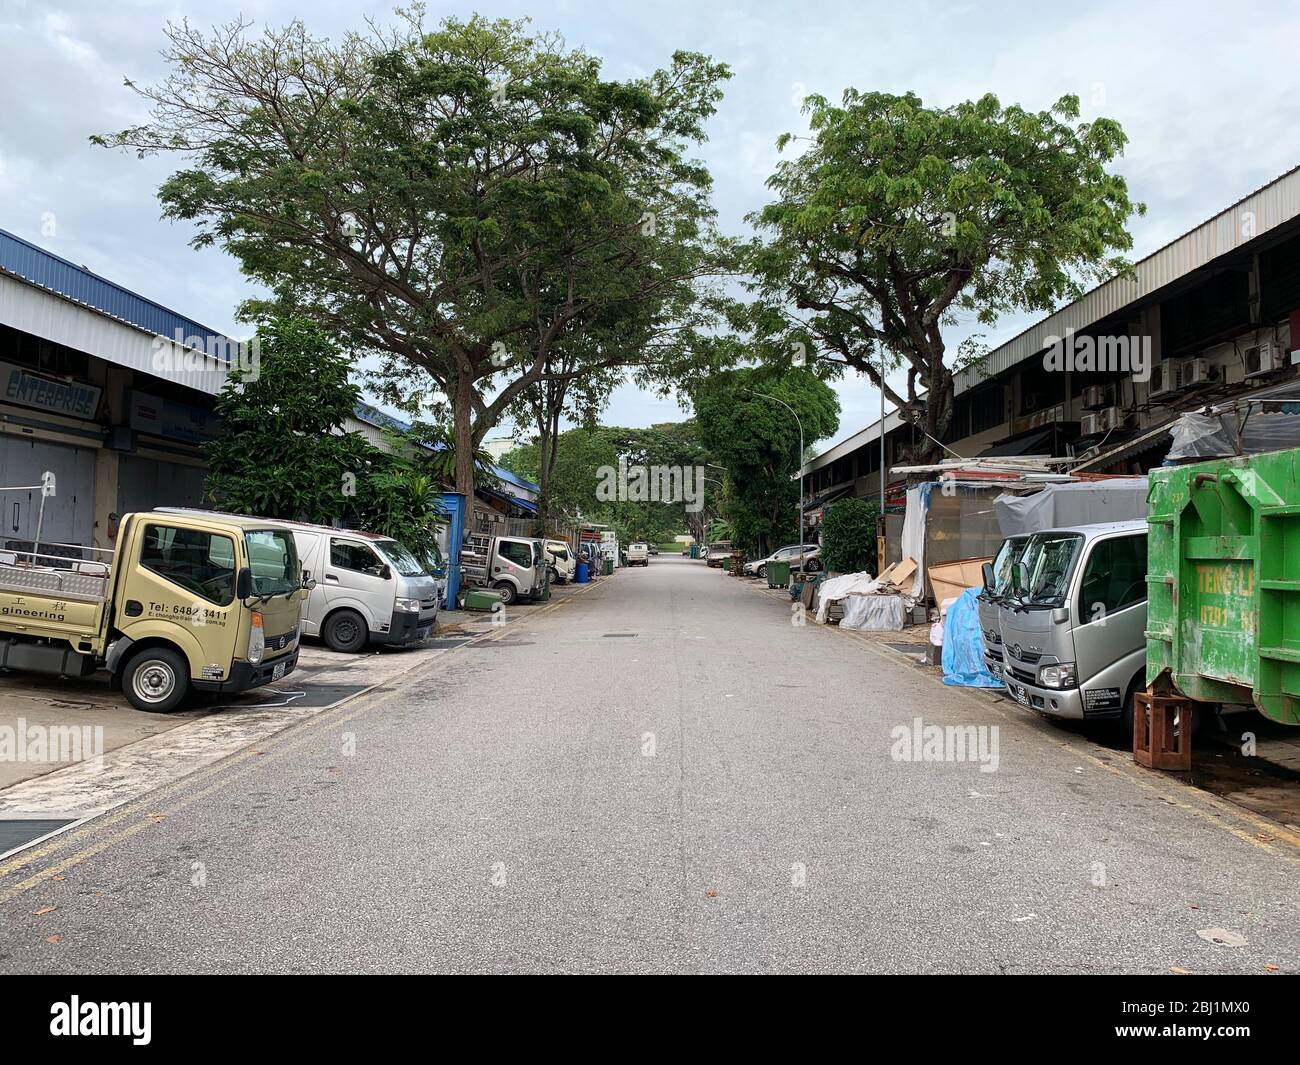 Singapour. 28 avril 2020. La plupart des ateliers ont été fermés au parc industriel Ang Mo Kio 2 à Singapour le 28 avril 2020 pour empêcher la propagation du coronavirus nouveau COVID-19. Crédit: AFLO Co. Ltd./Alay Live News Banque D'Images